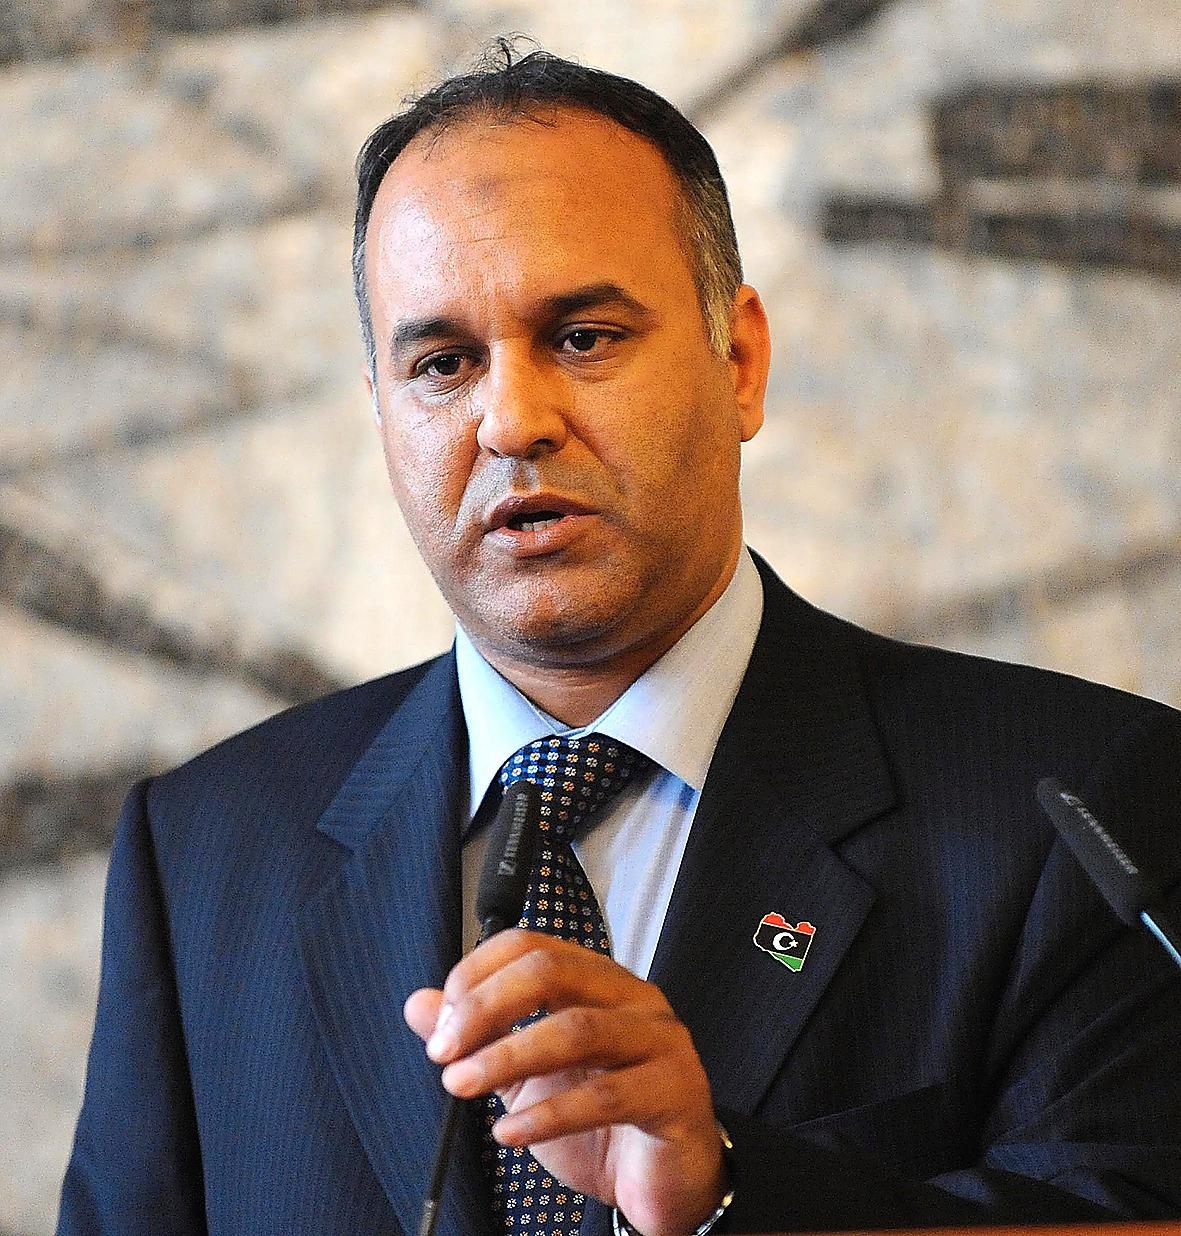 Ali Abd-al-Aziz al-Isawi.  Ledande politiker och tidigare utrikesminister i NTC. Jobbade inom Gaddafis administration innan han bytte sida.